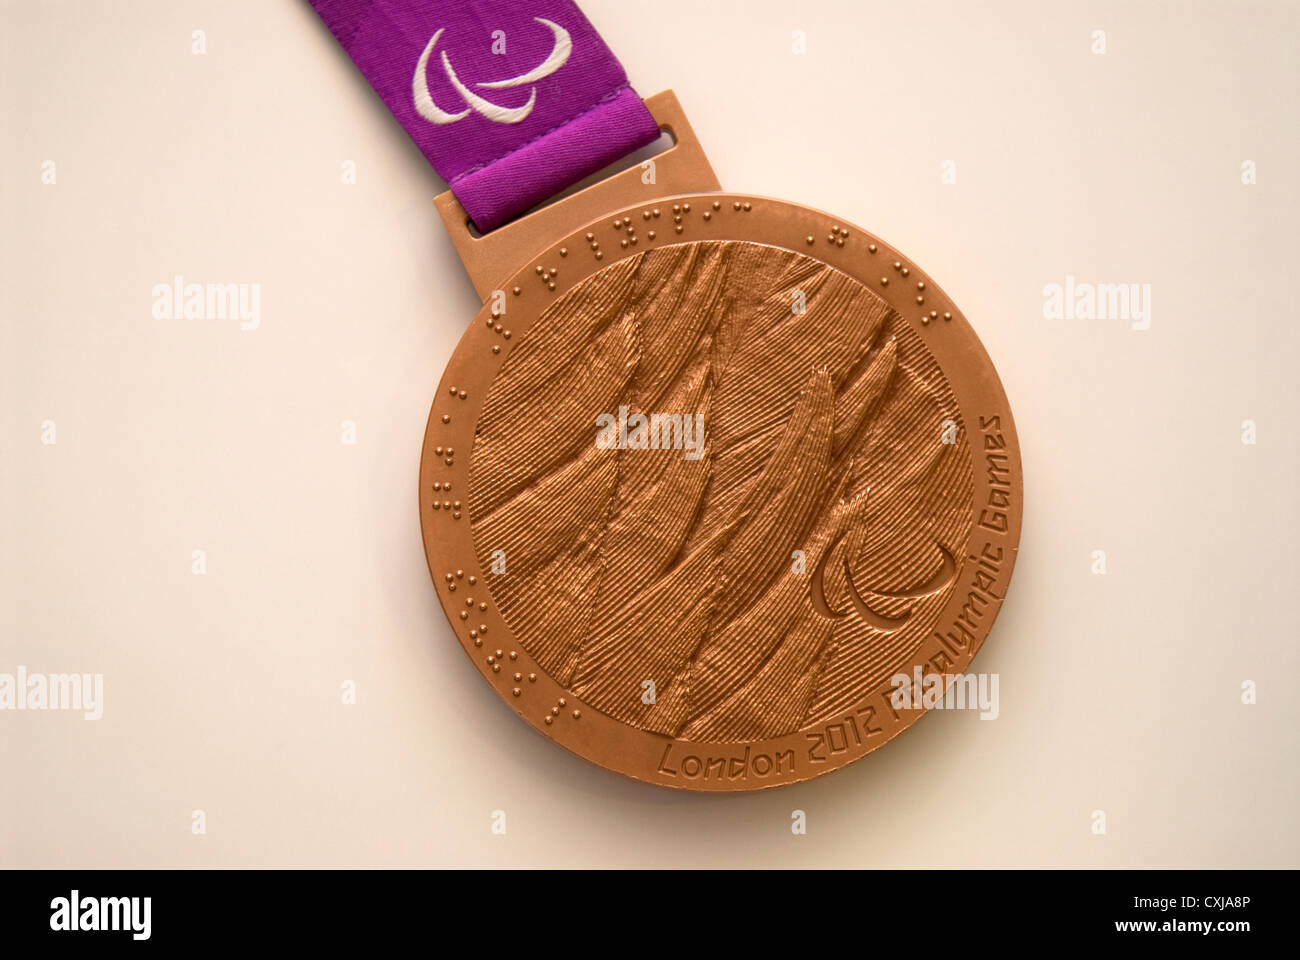 Ganó la medalla de bronce en los Juegos Paralímpicos de Londres 2012 Por Olivia Breen. Foto de stock